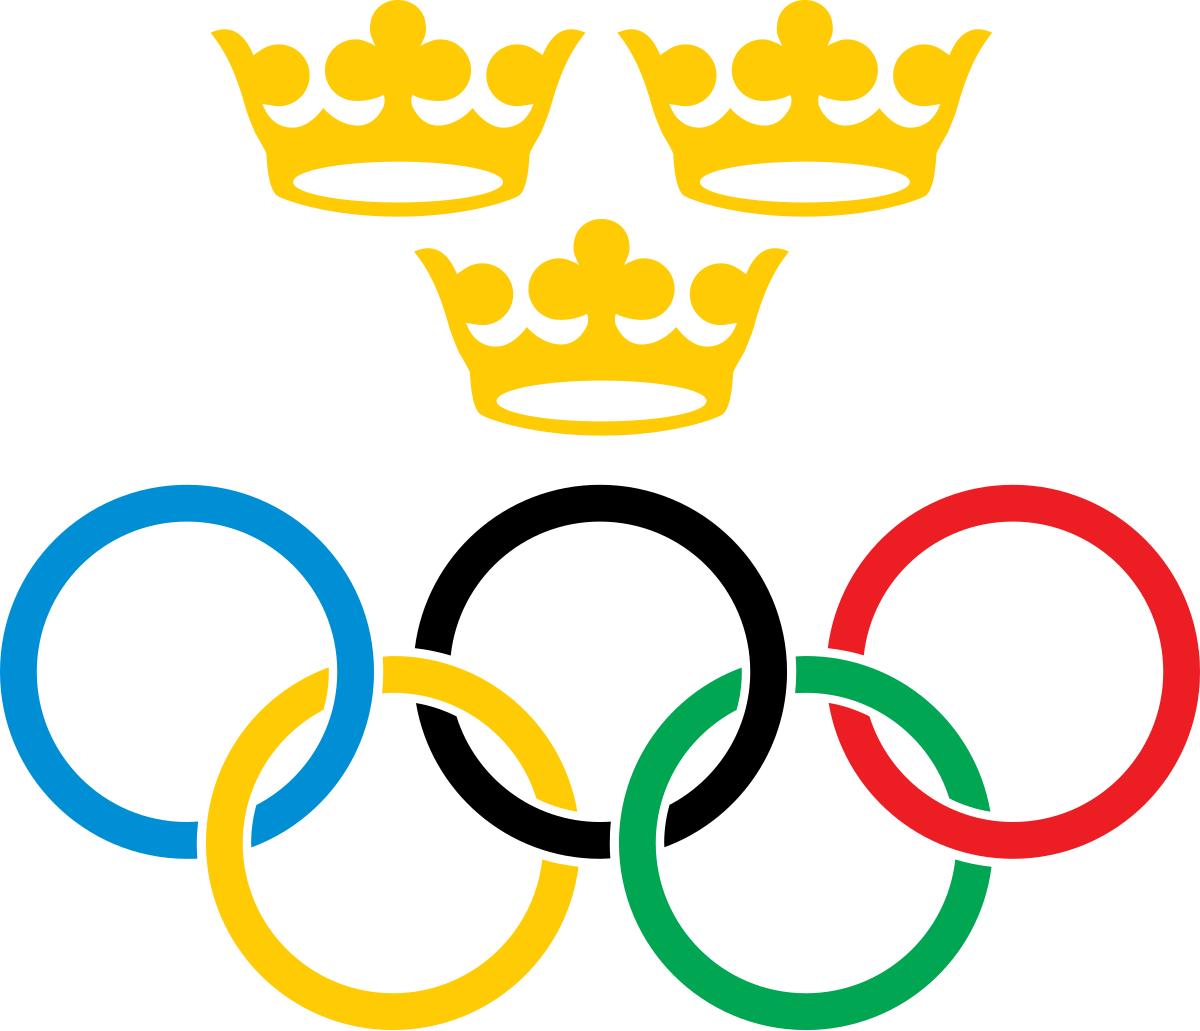 Swedish Olympic Committee - Wikipedia